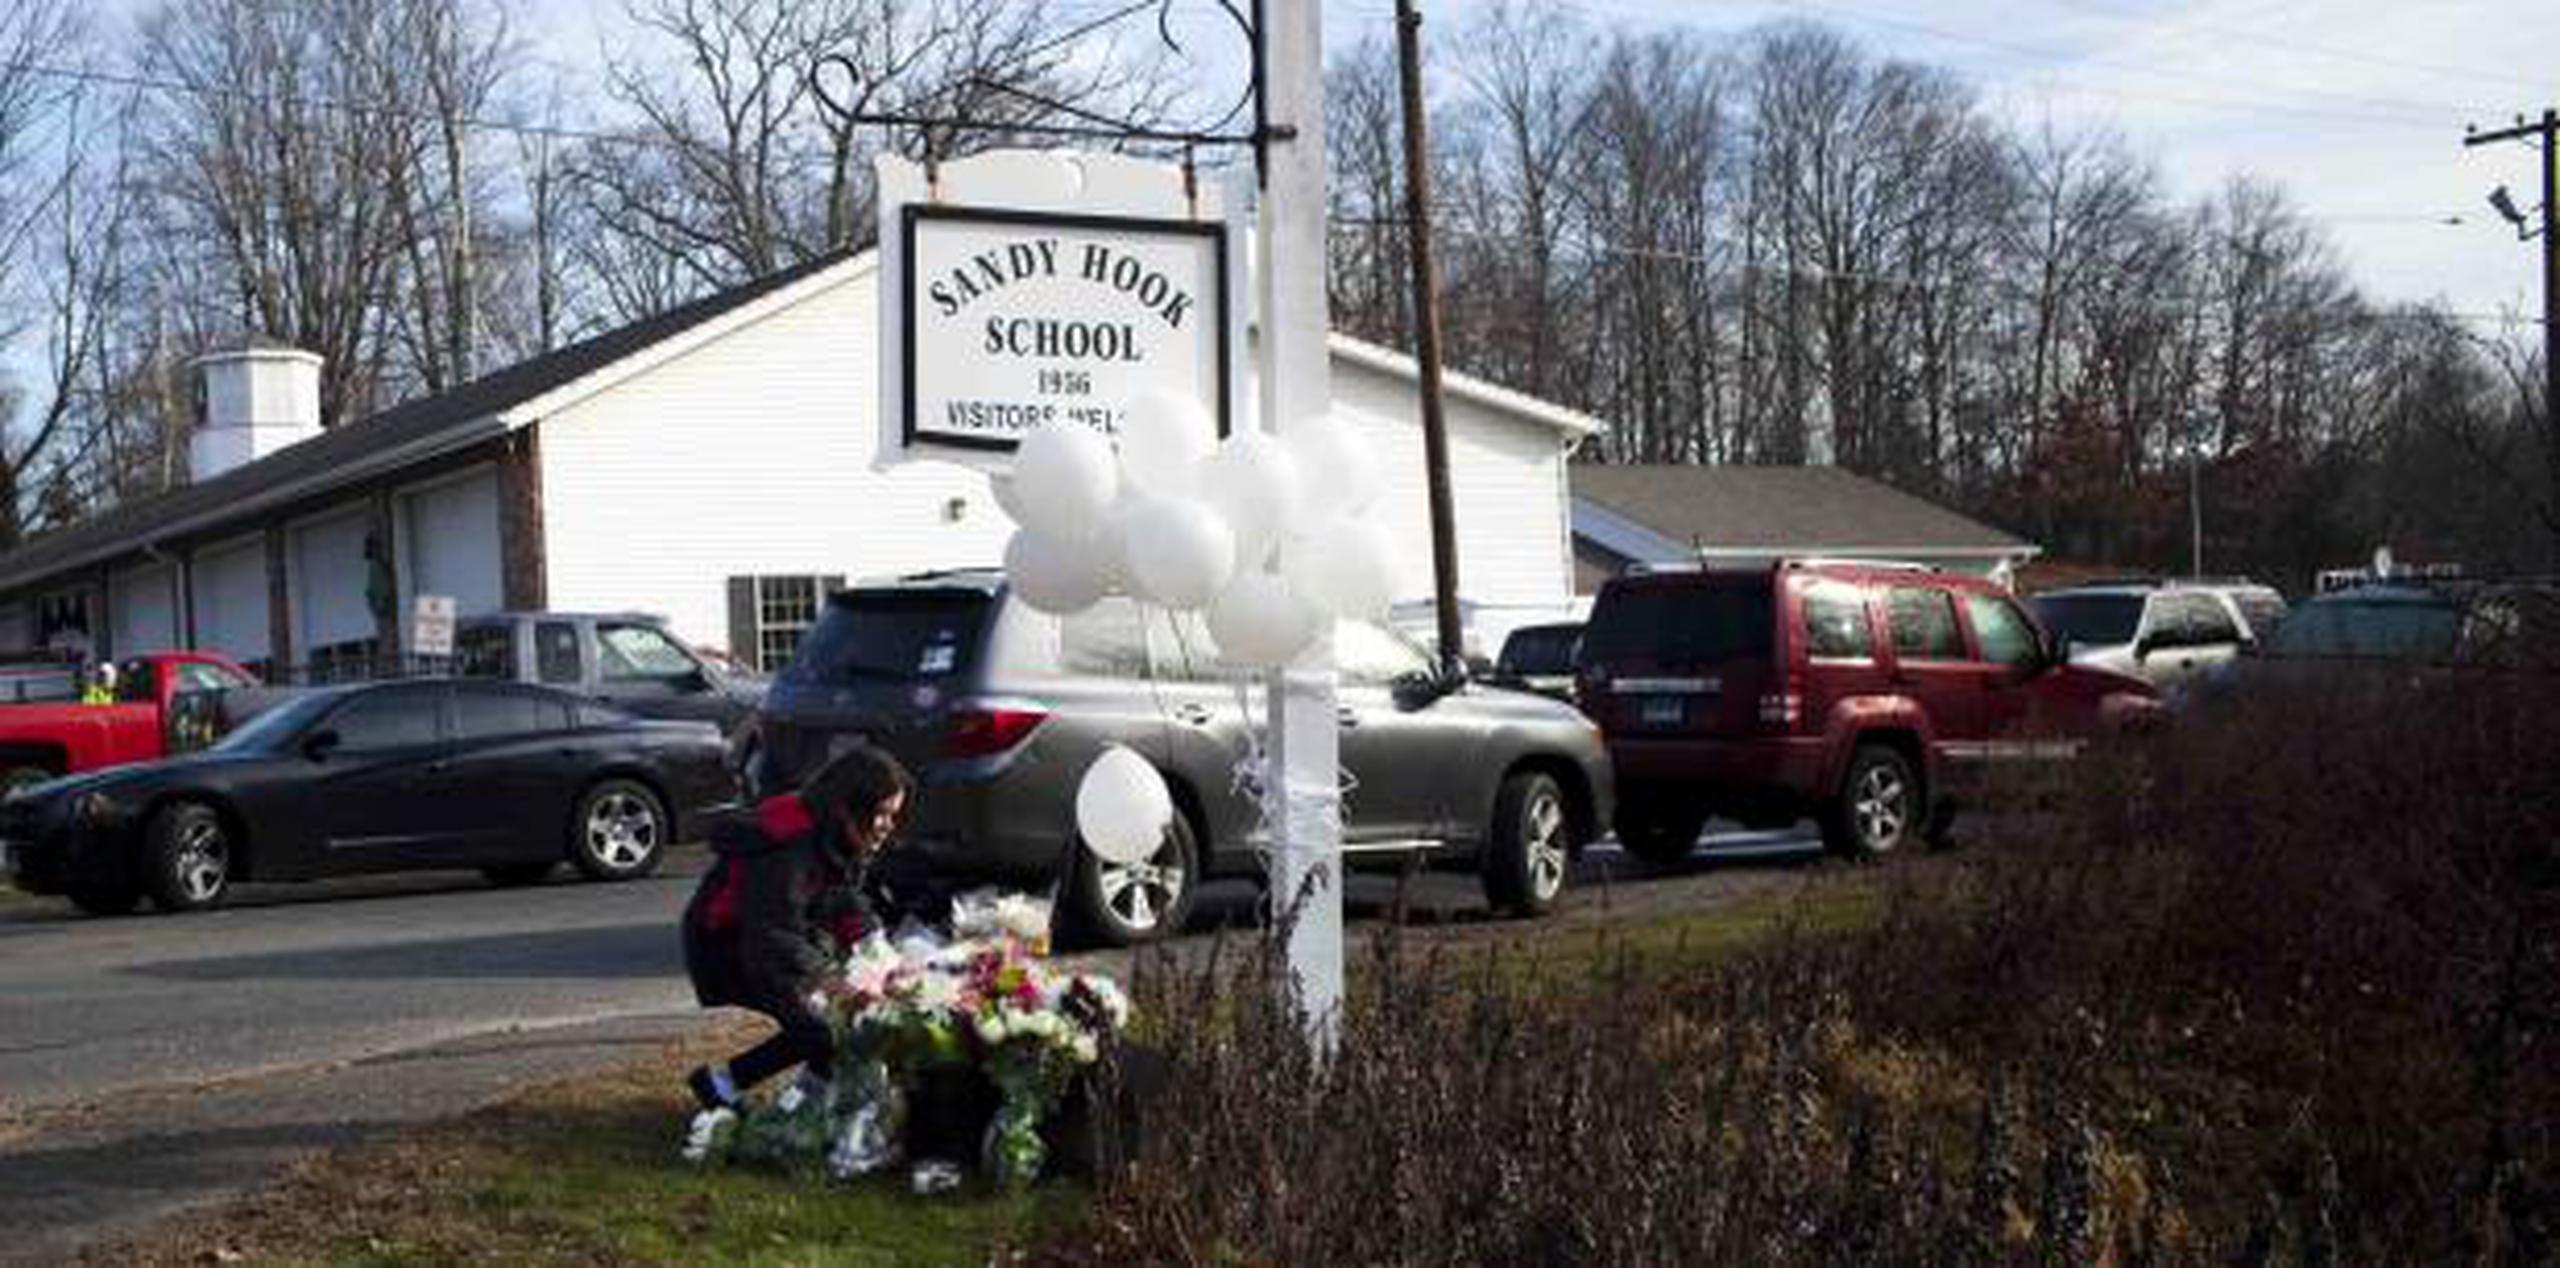 La masacre en la escuela primaria Sandy Hook ocurrió el 14 de diciembre de 2012. (Archivo)